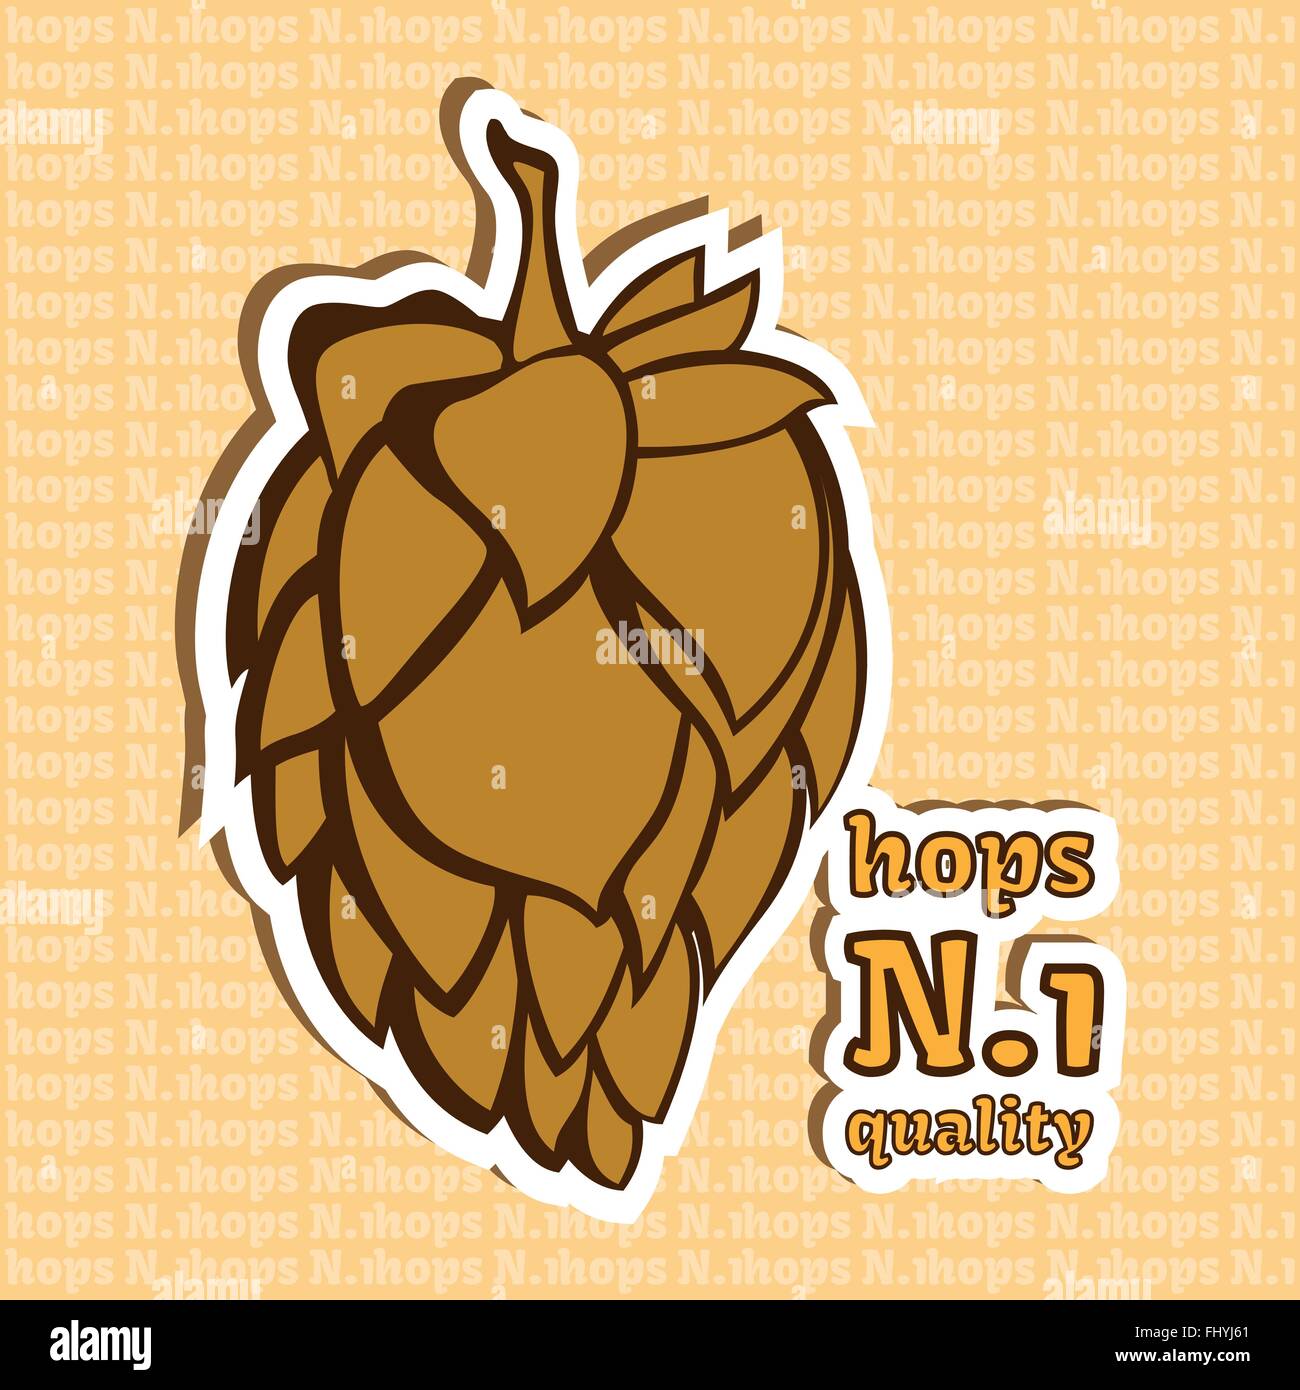 Fleur jaune doré Hop illustration vectorielle. 1 Numéro de produit de qualité. Image finale prêt pour des fins de marketing et vente de la bière. Illustration de Vecteur